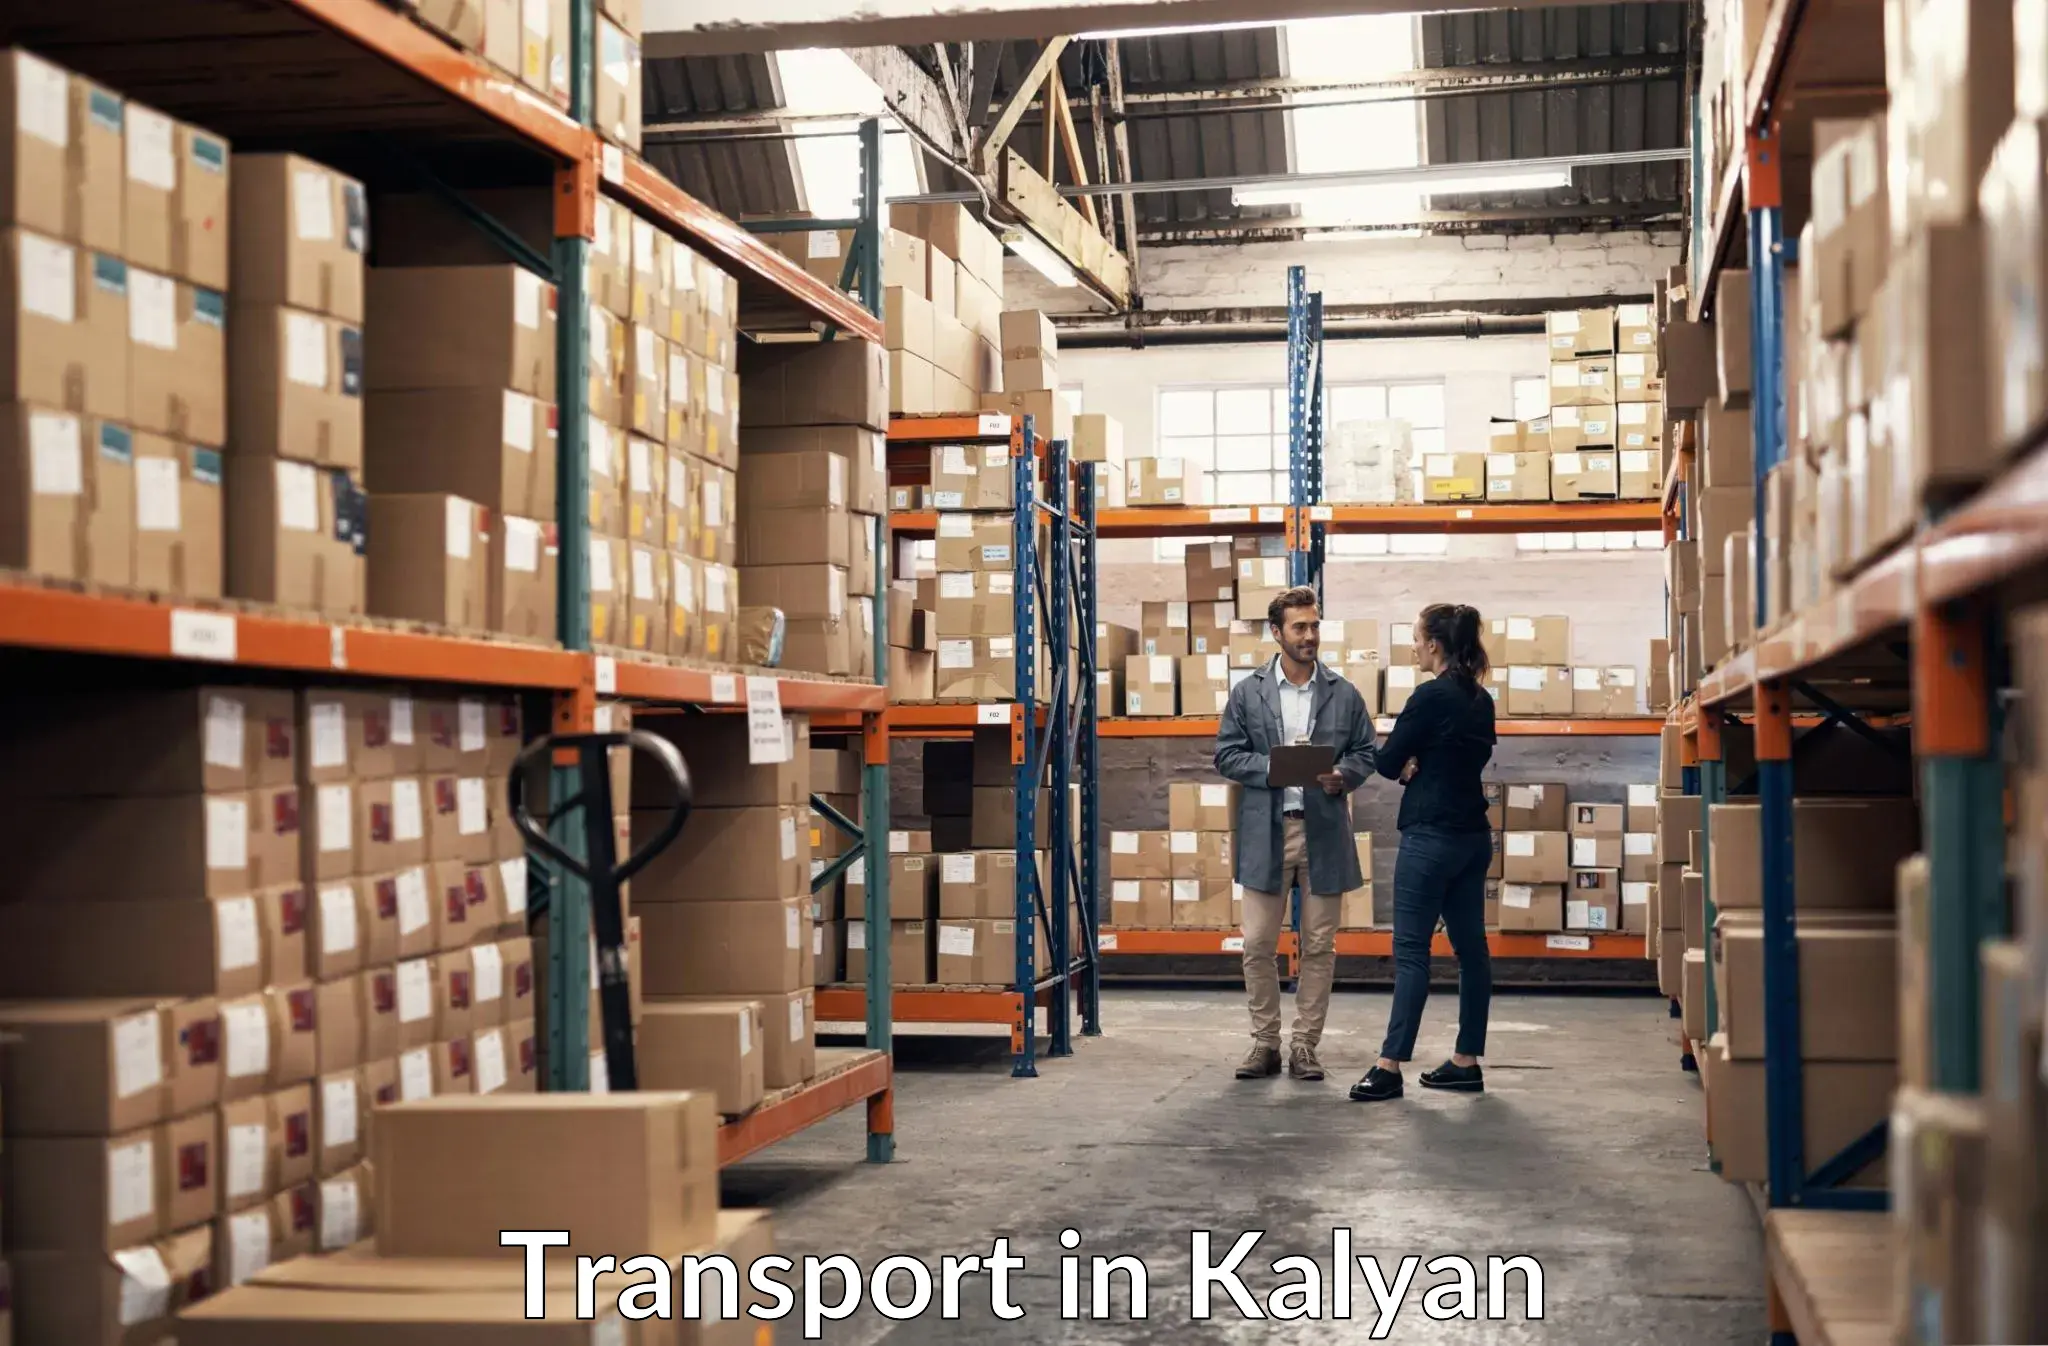 Cargo train transport services in Kalyan